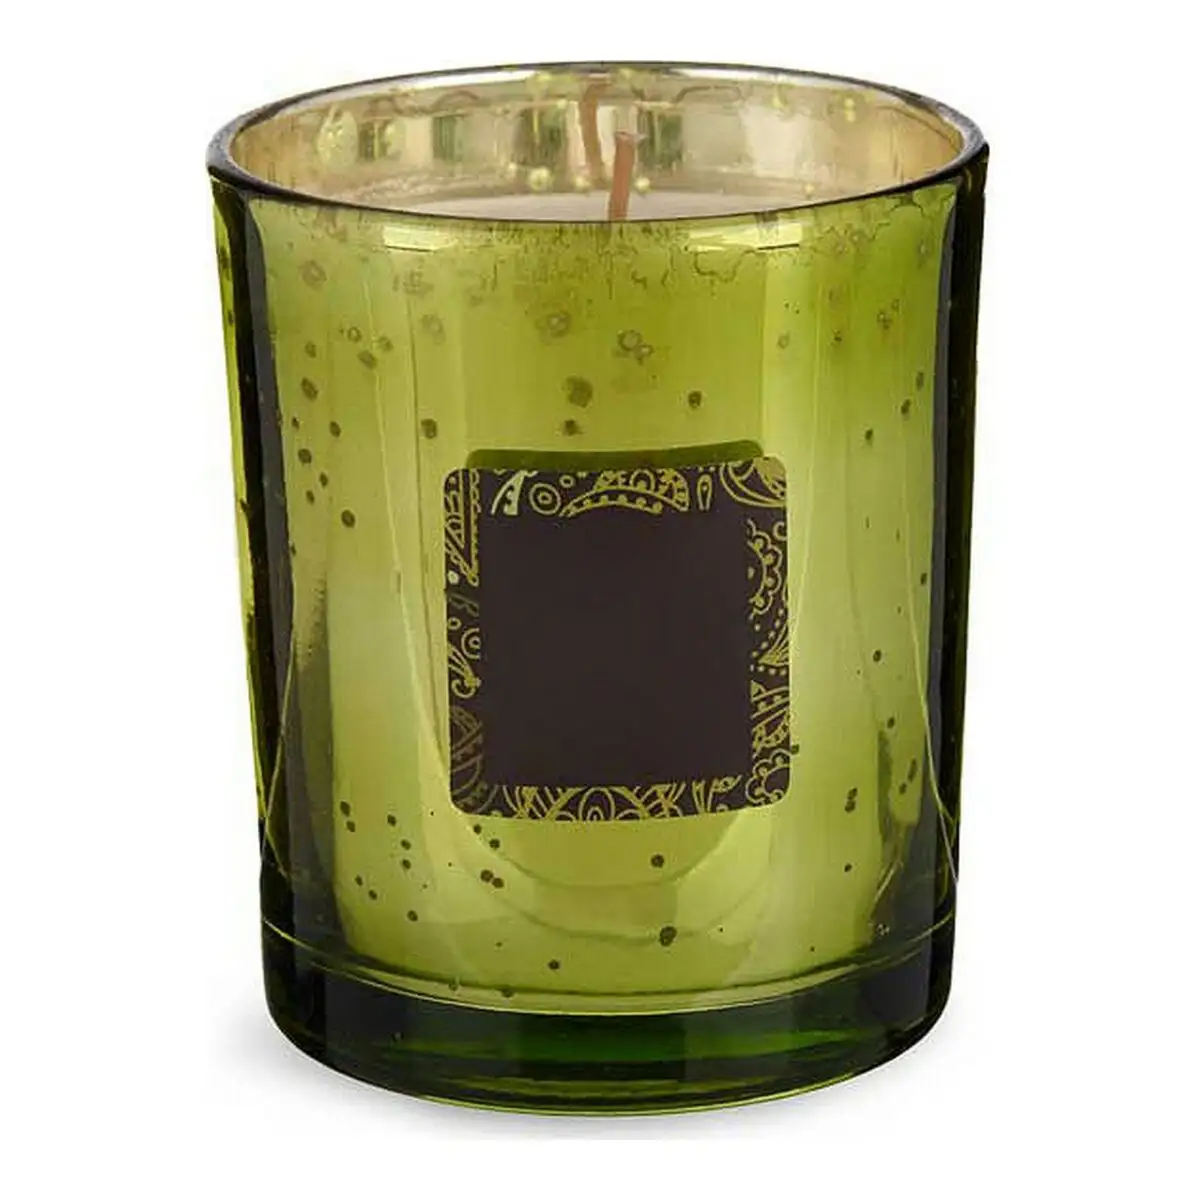 Bougie parfumee viride citron the vert vert 8 x 9 x 8 cm _8200. DIAYTAR SENEGAL - Votre Passage vers l'Éclat et la Beauté. Explorez notre boutique en ligne et trouvez des produits qui subliment votre apparence et votre espace.